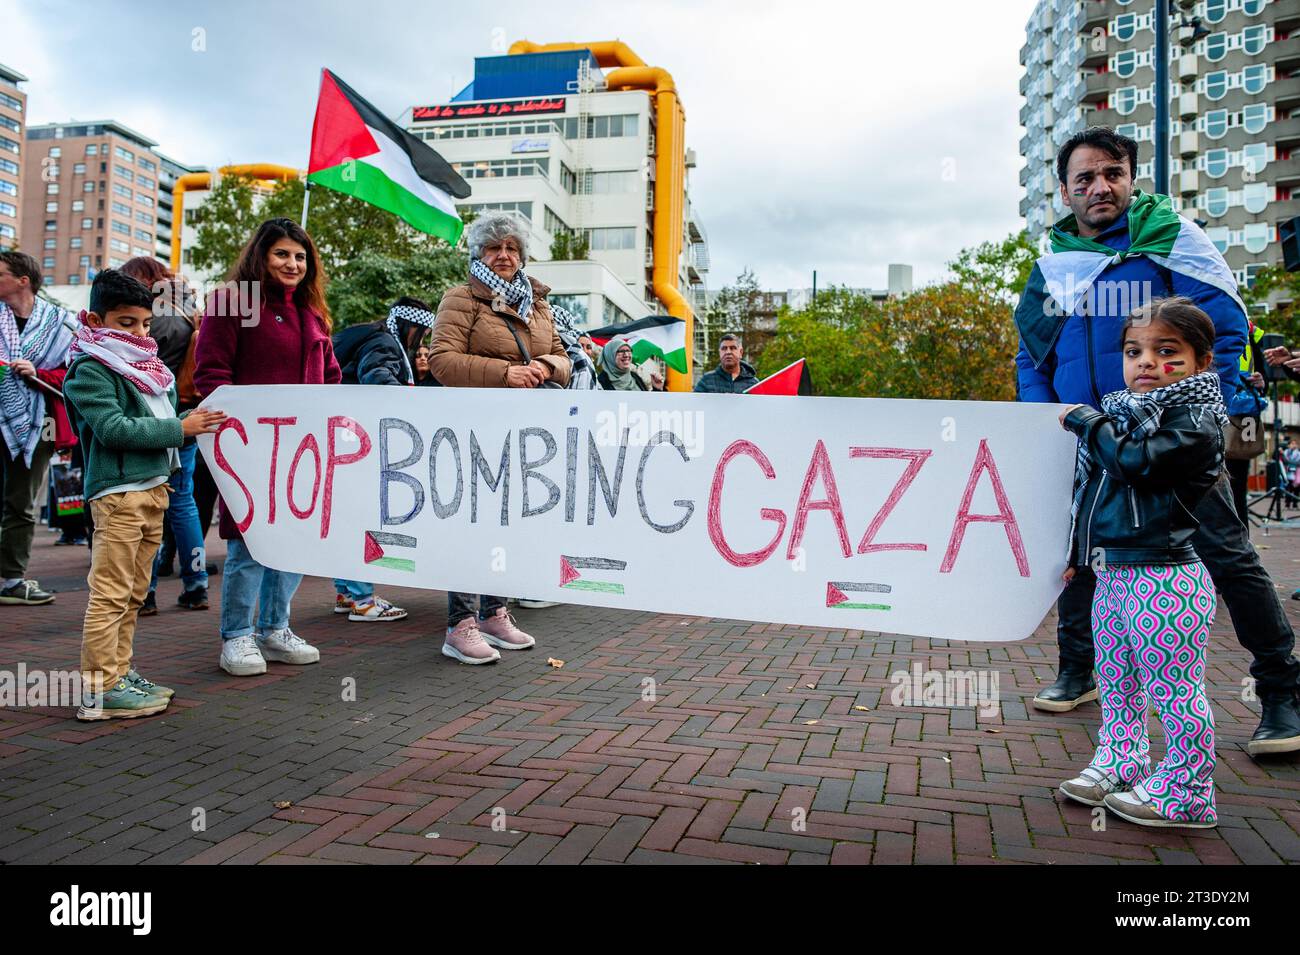 22 ottobre, Rotterdam. I palestinesi e i loro sostenitori continuano a protestare per condannare il governo di Israele ed esprimere solidarietà al popolo palestinese. Circa 5.000 manifestanti si sono riuniti in lutto, furia e solidarietà a causa della recente escalation del conflitto israelo-palestinese e degli eventi inquietanti a Gaza. Foto Stock